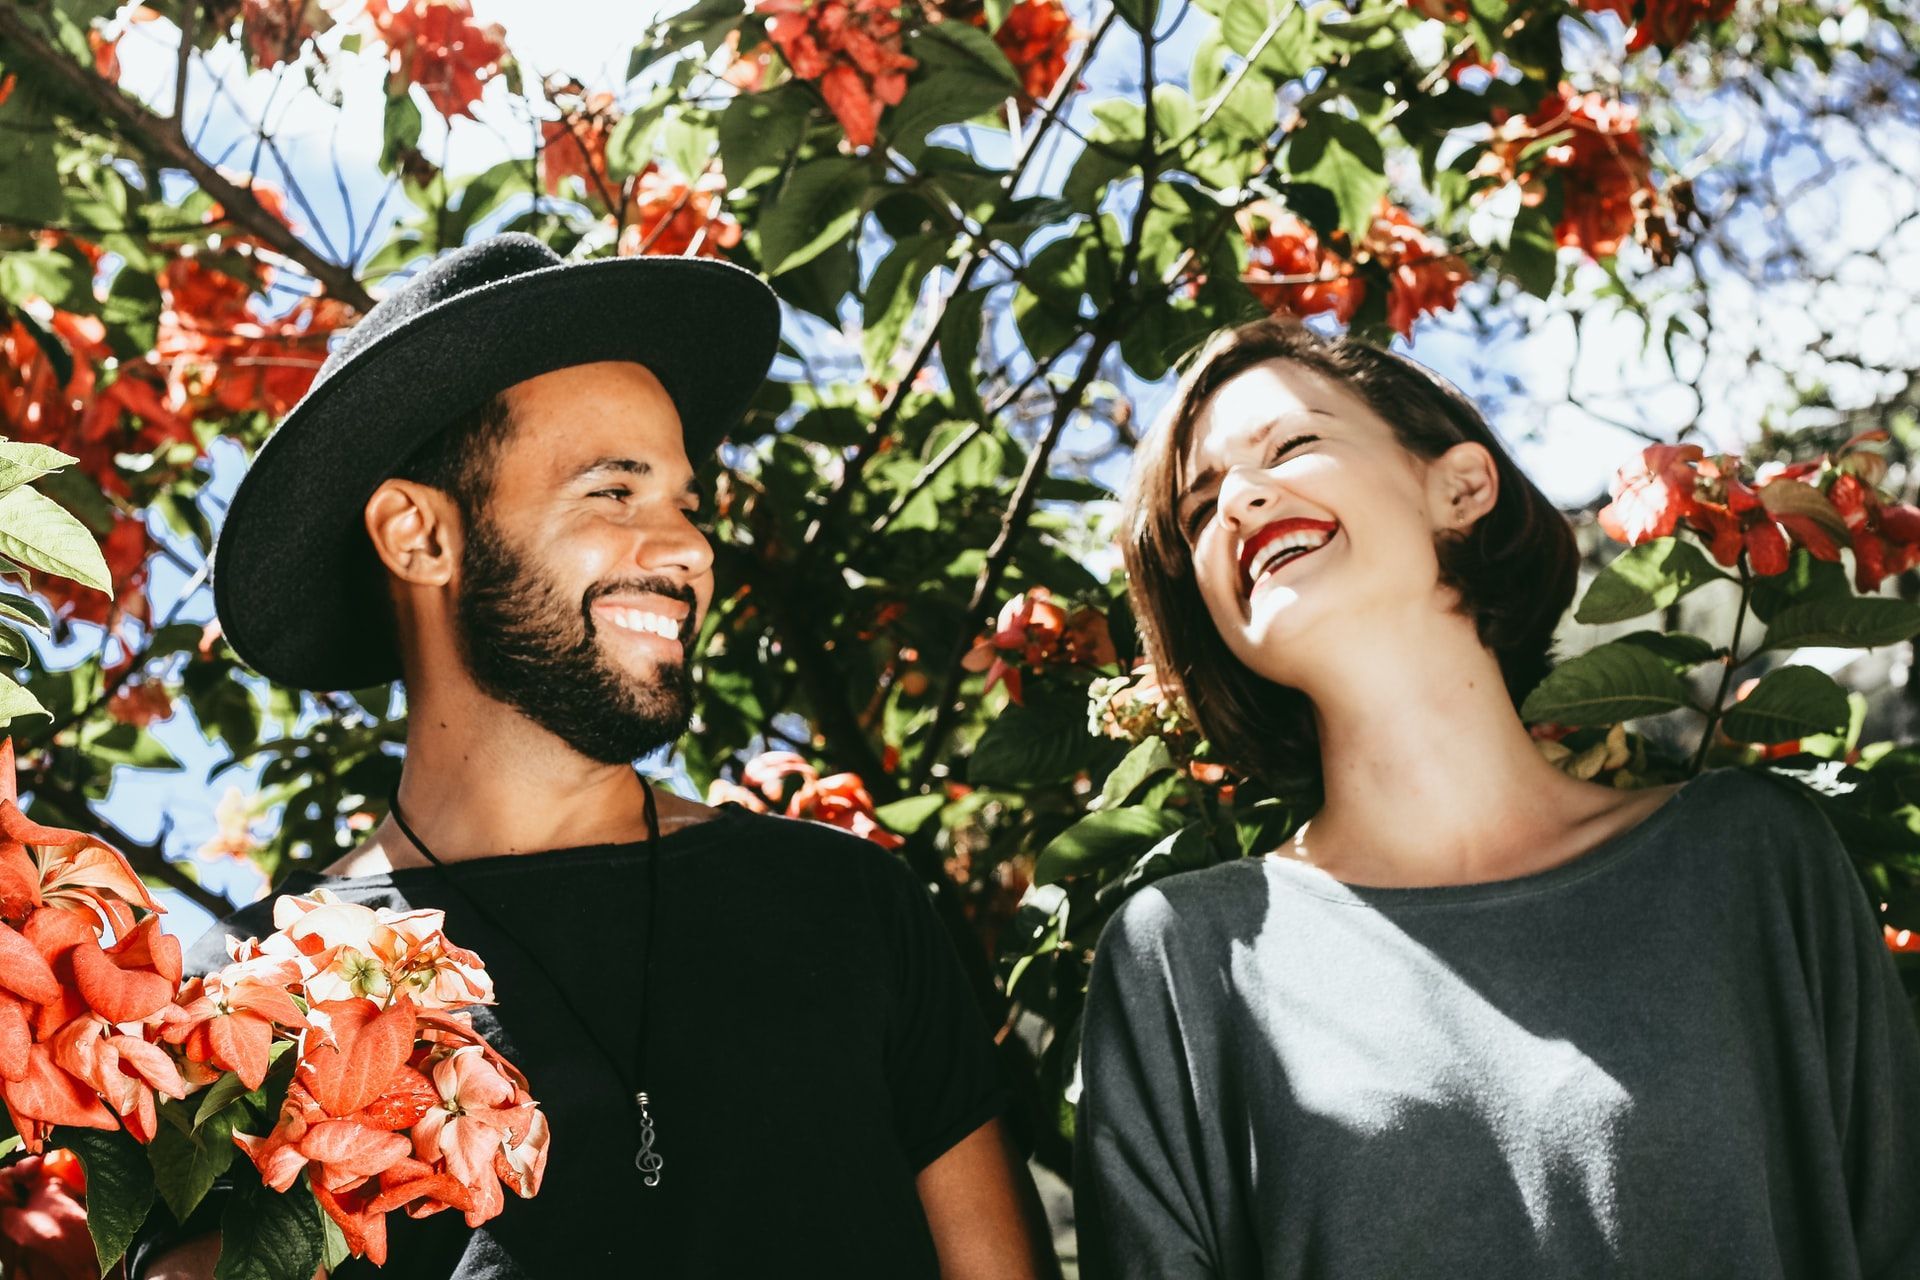 Вчені назвали 5 речей, які об'єднують усі щасливі пари